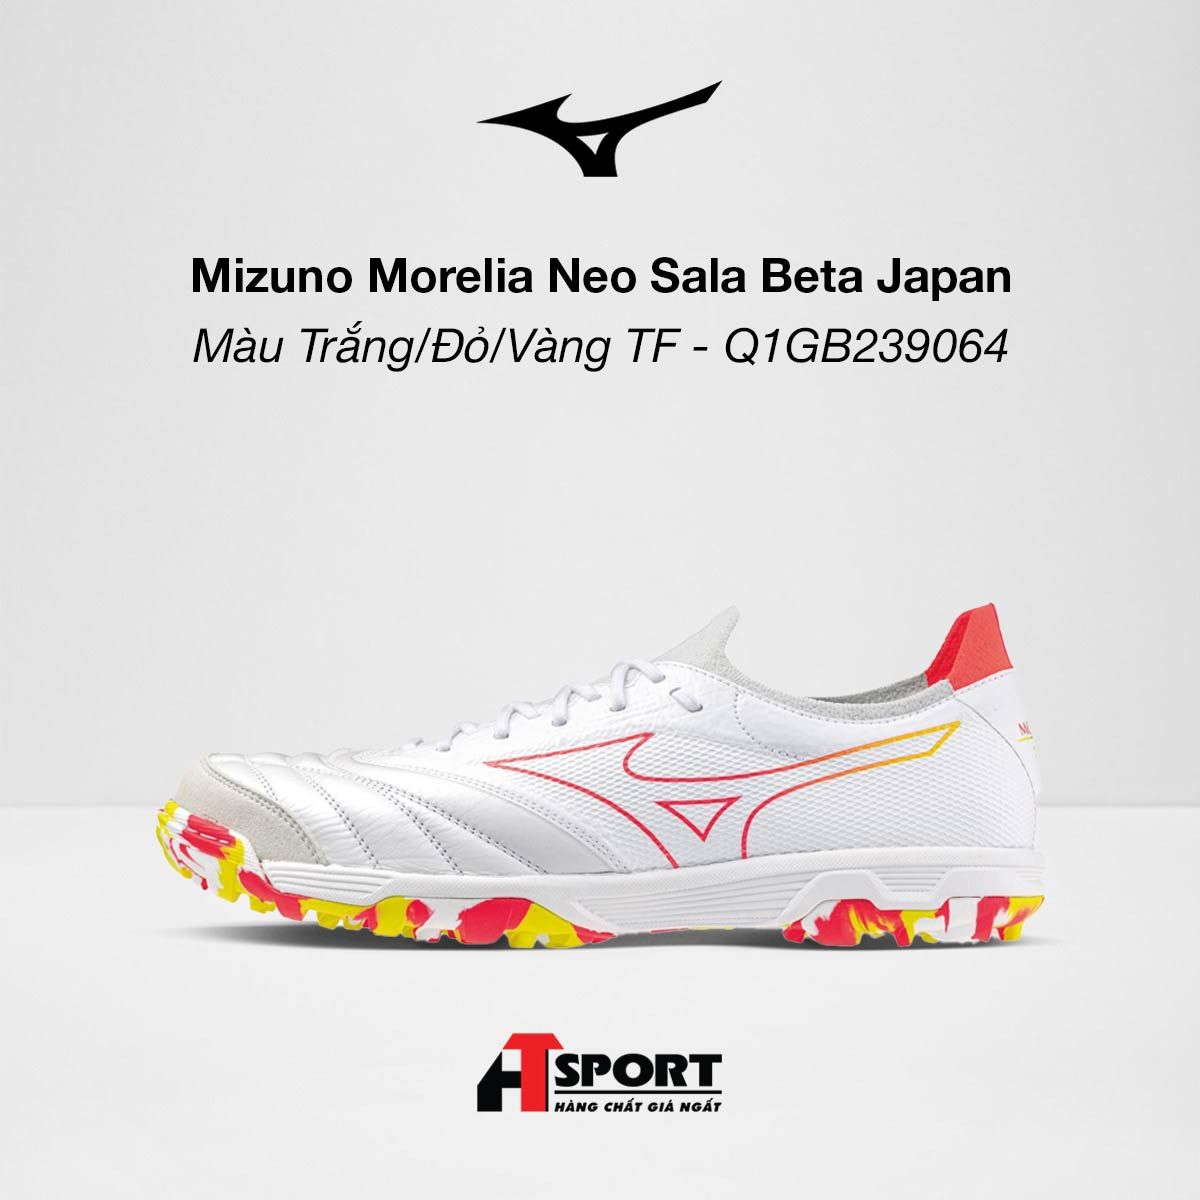  Mizuno Morelia Neo Sala Beta Japan Màu Trắng/Đỏ/Vàng TF - Q1GB239064 